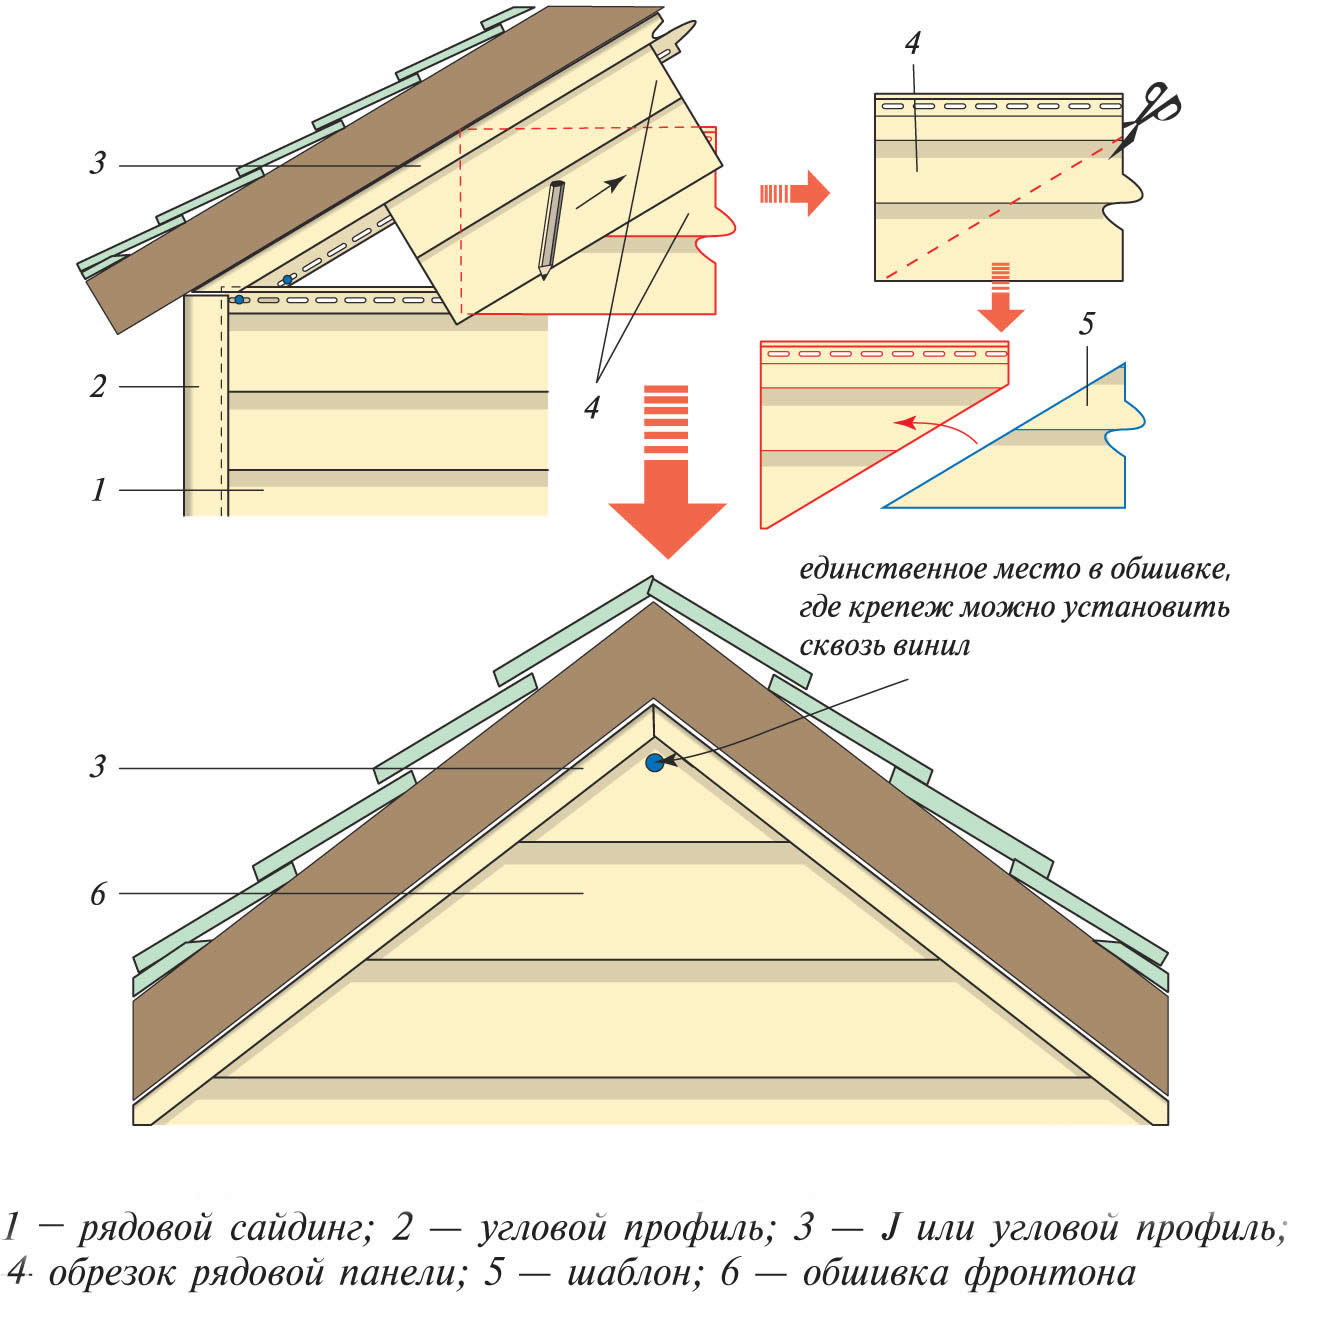 Как сделать фронтон крыши дома своими руками — фото и пошаговая видео инструкция